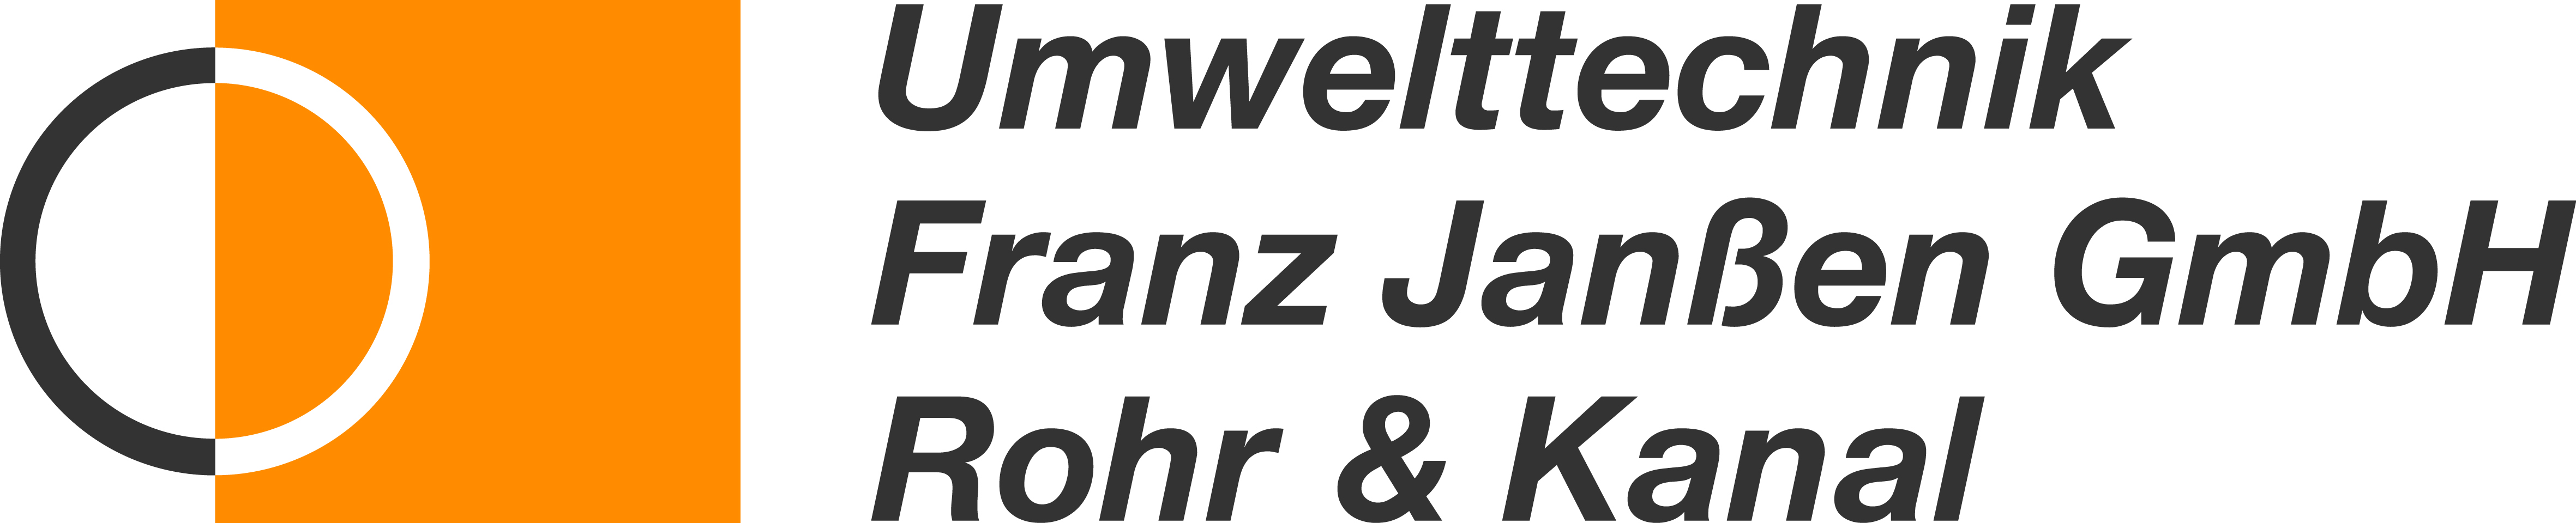 Umwelttechnik Franz Janßen GmbH